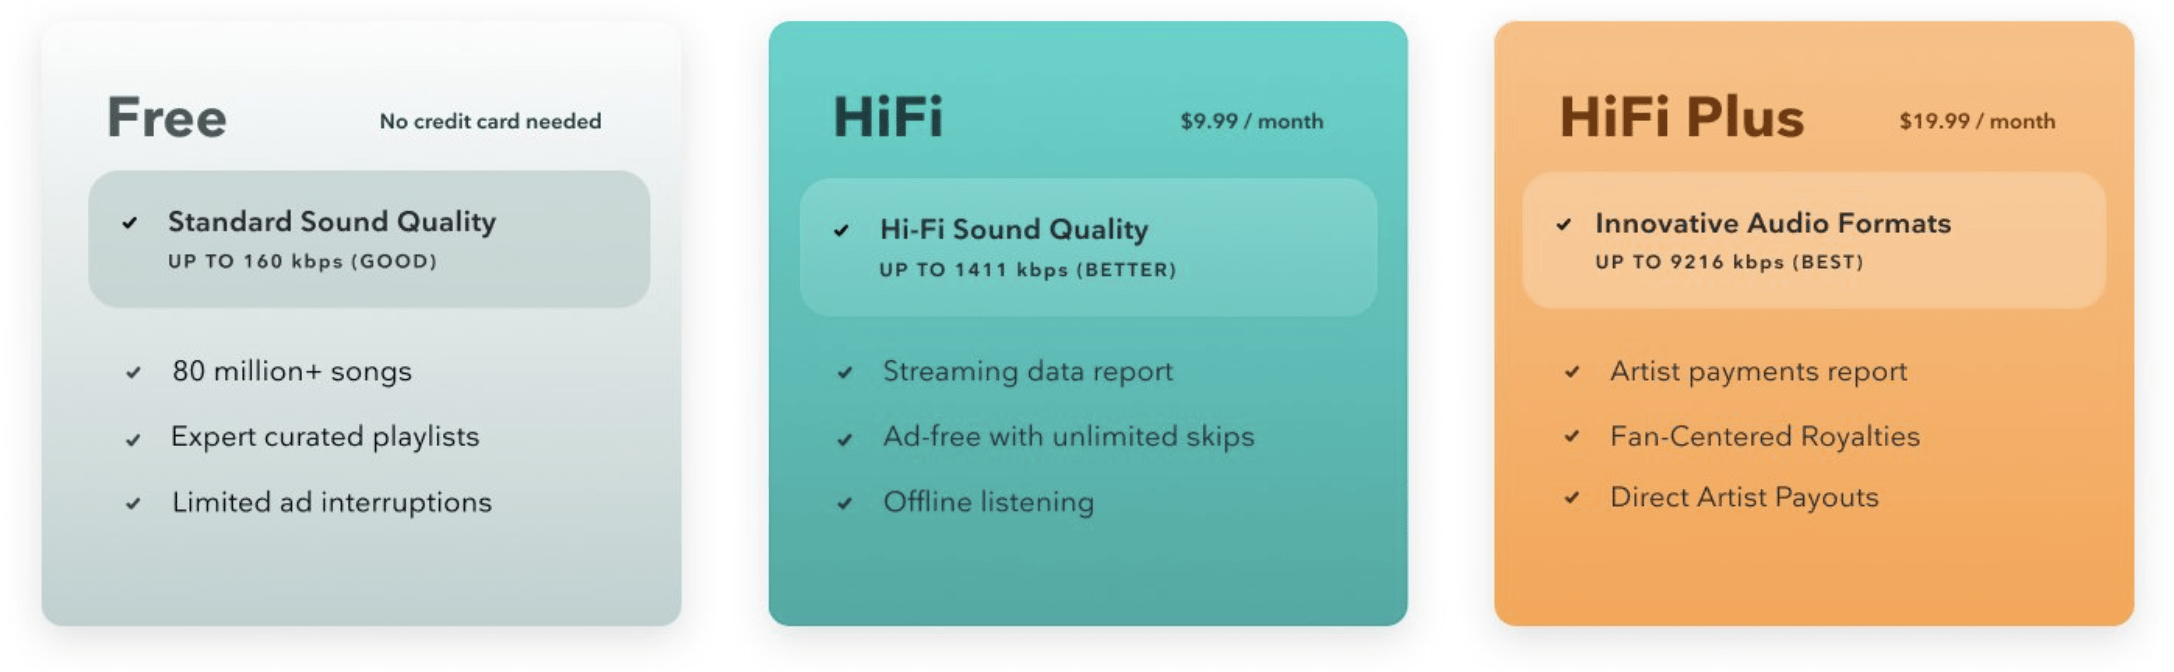 Free, HiFi, and HiFi Plus